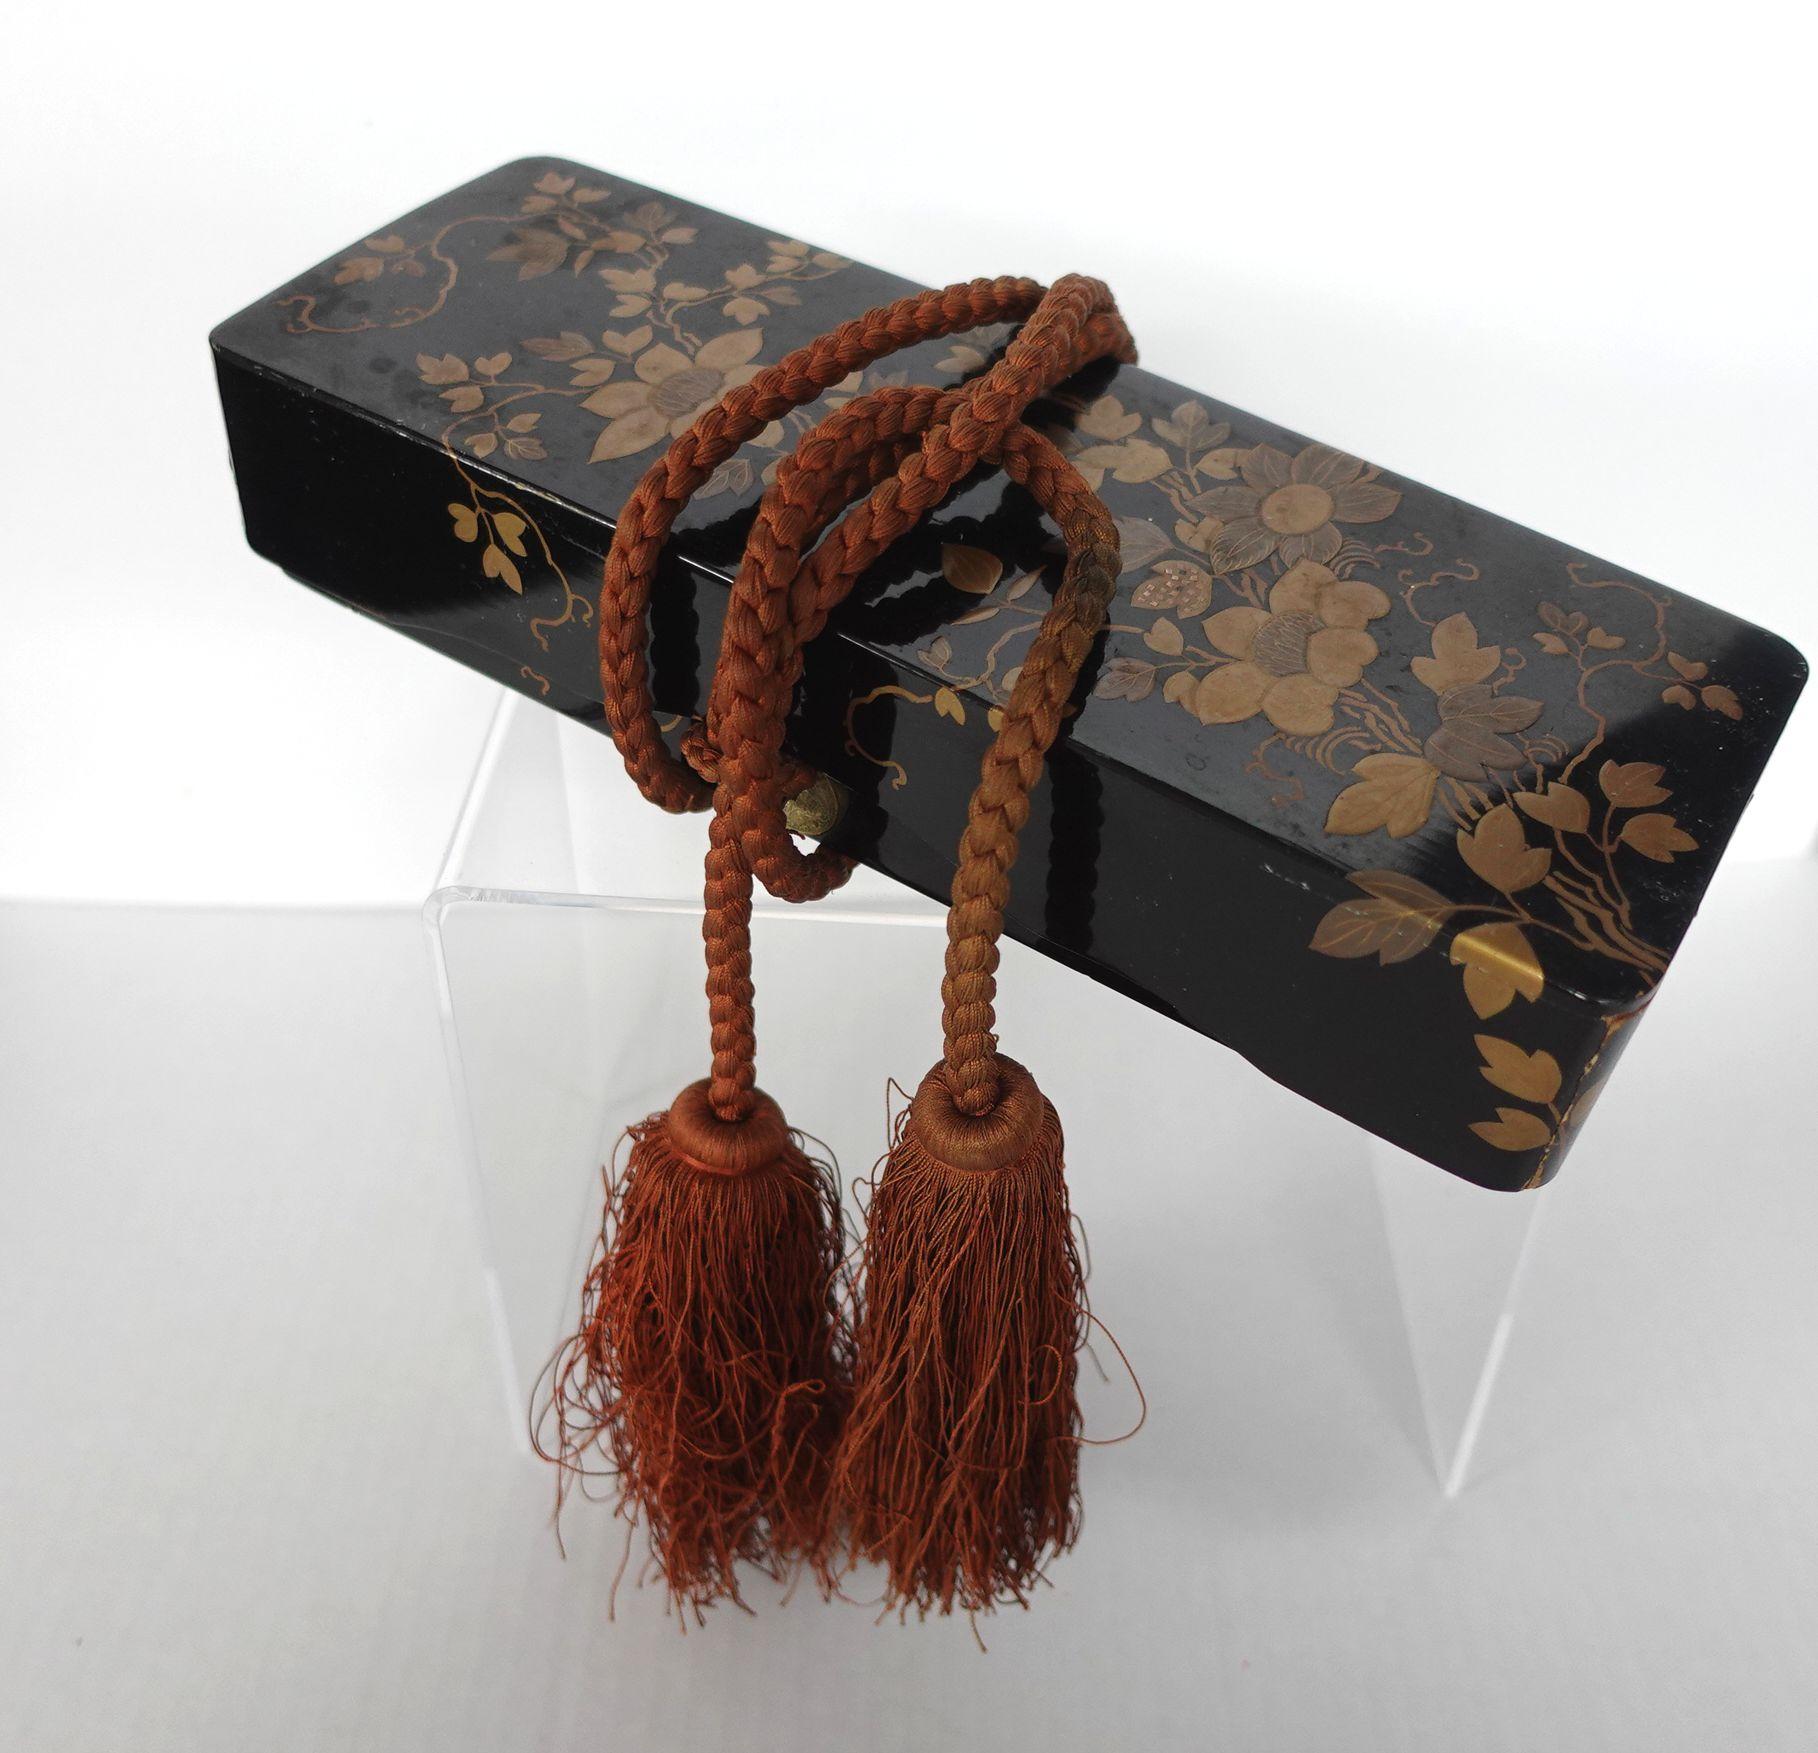 Boîte à documents en laque dorée japonaise avec un document calligraphié, peint et doré en fleurs, une œuvre d'art dédiée.
Les cordes décorées d'origine lui ont été appliquées.